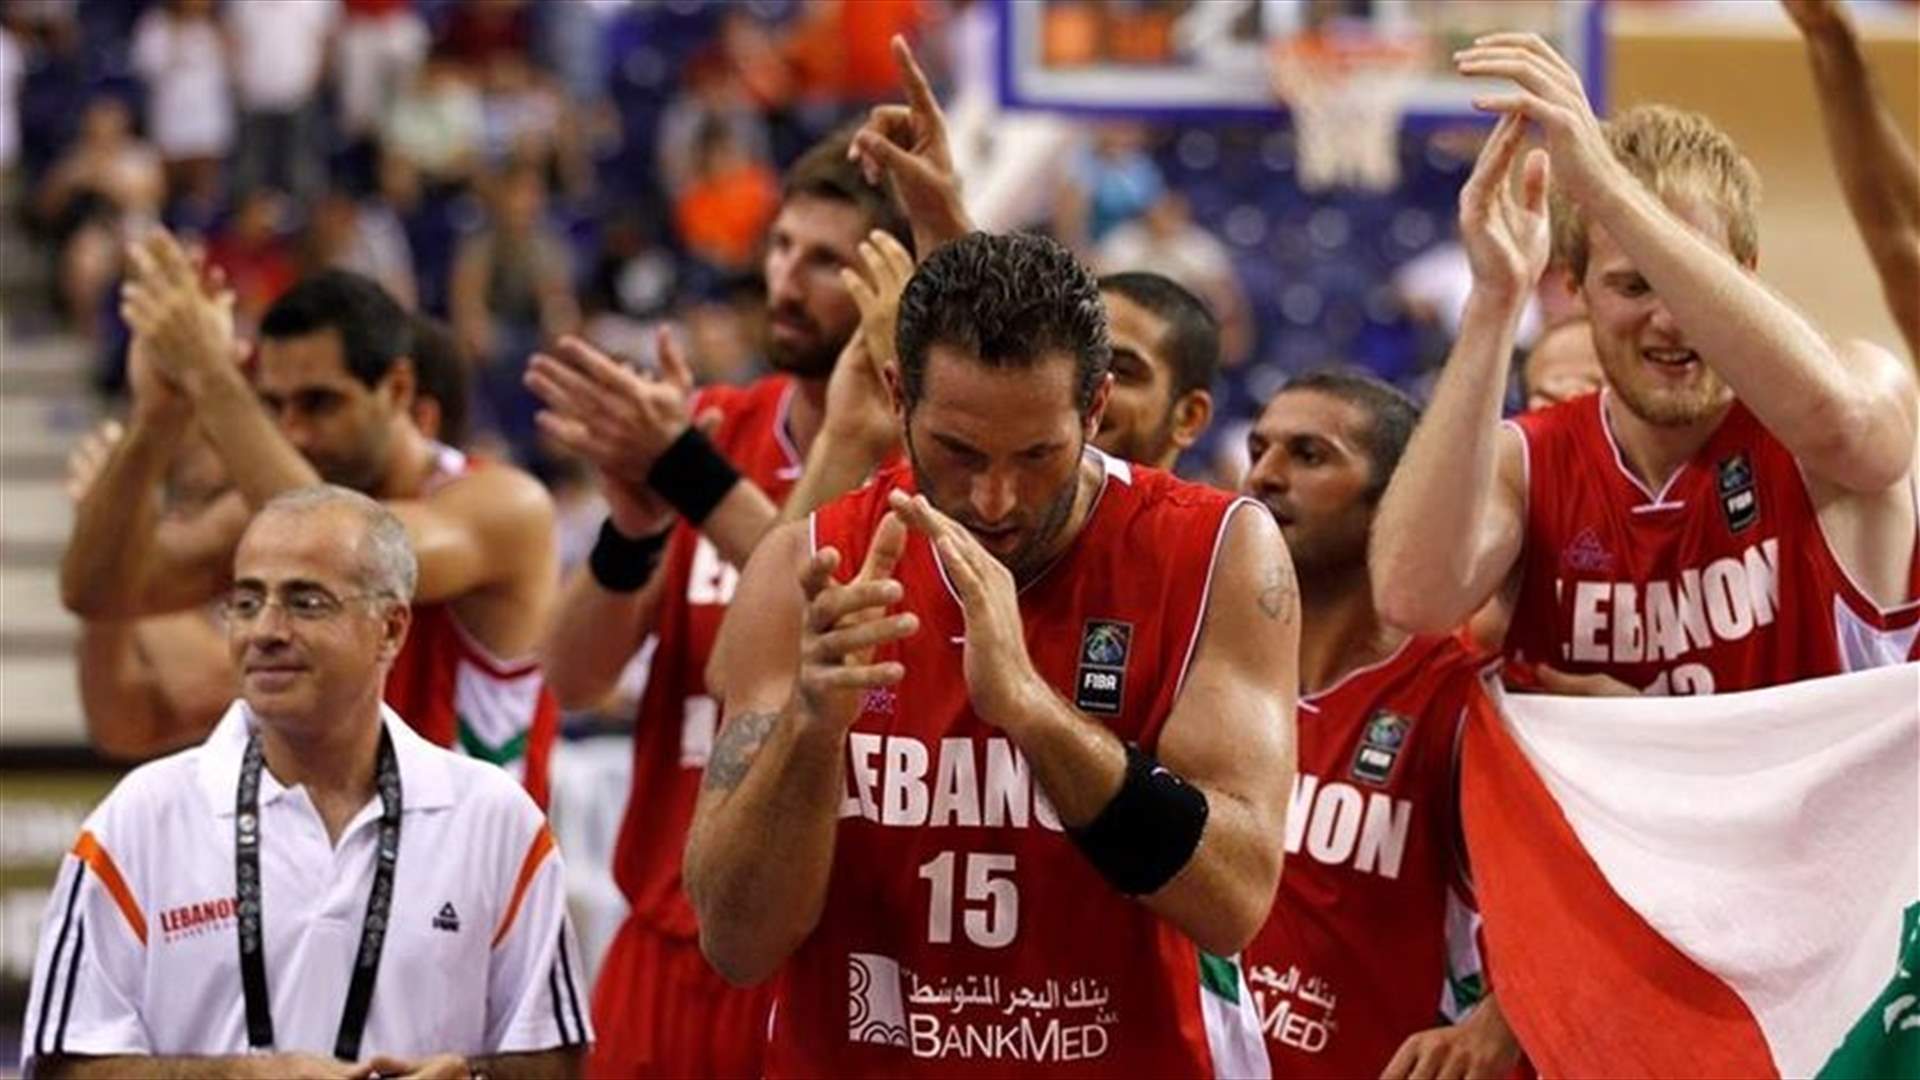 بالصورة - توقيع رئيس الإتحاد اللبناني لكرة السلة على عقد التأمين لفادي الخطيب